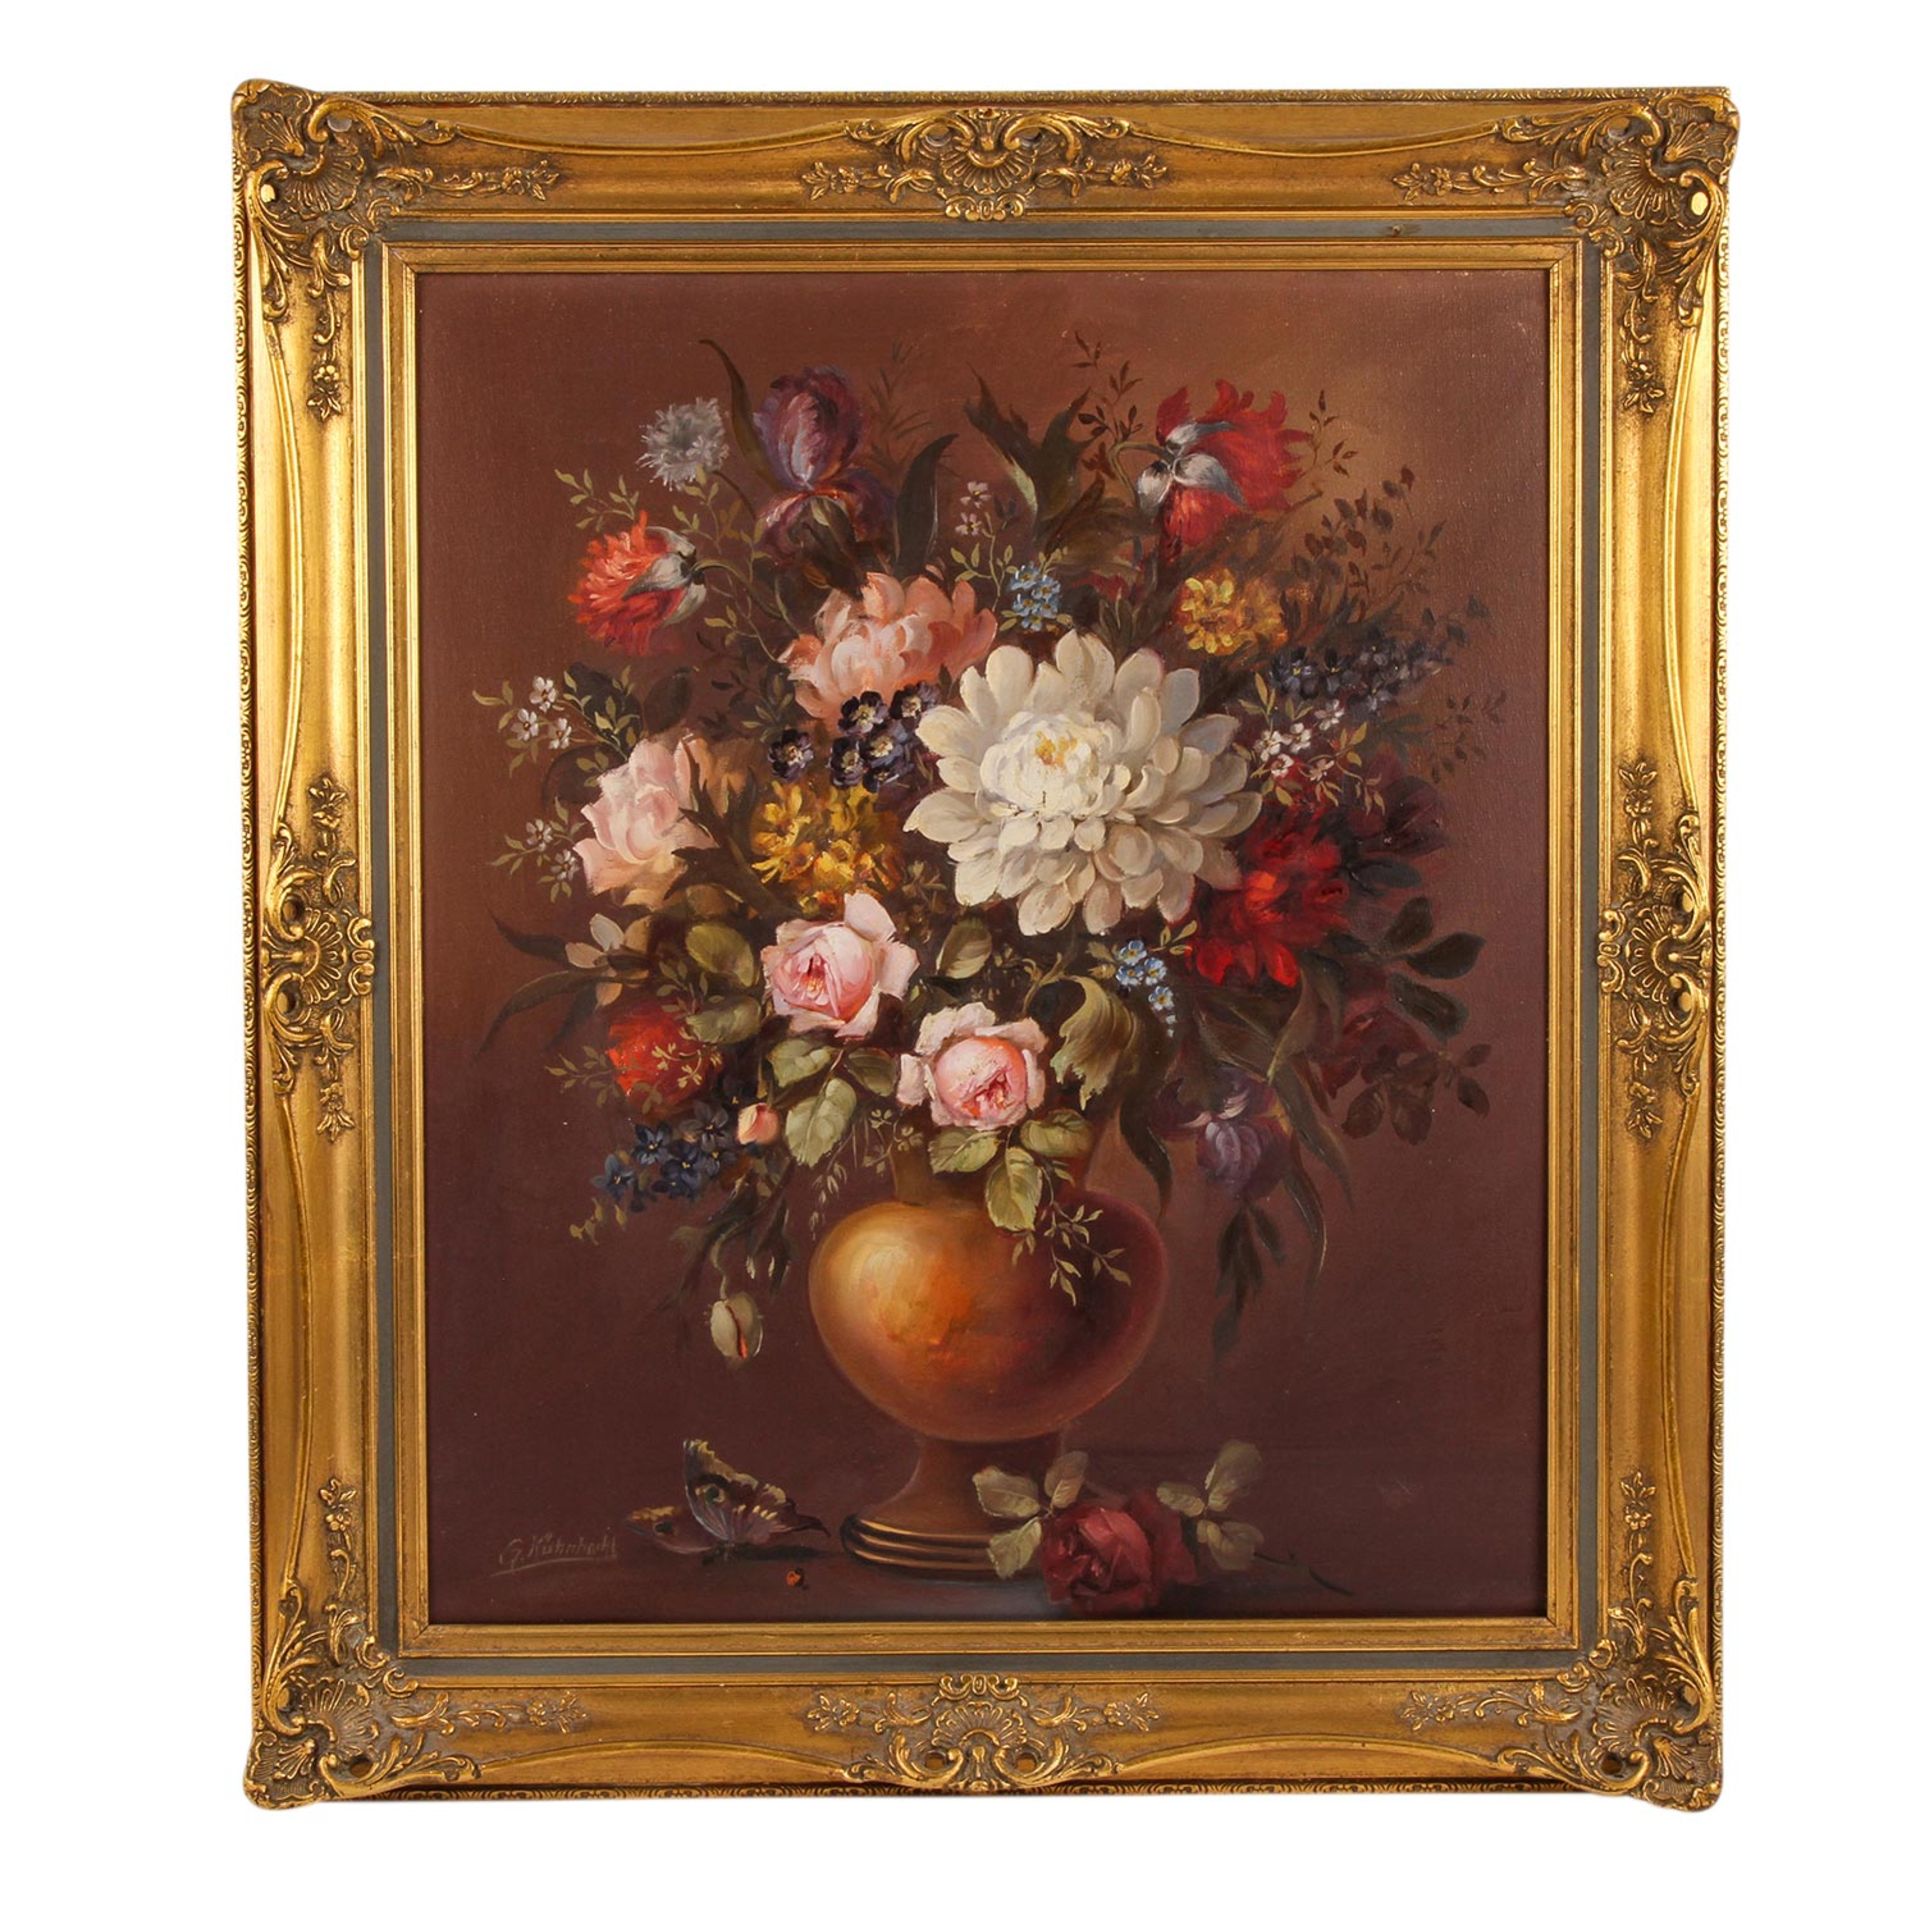 Kühnhackl, G. (Maler/in 20. Jh.), "Stillleben mit Blumenbouquet in Vase und Schmetterling", u.li. - Bild 2 aus 5